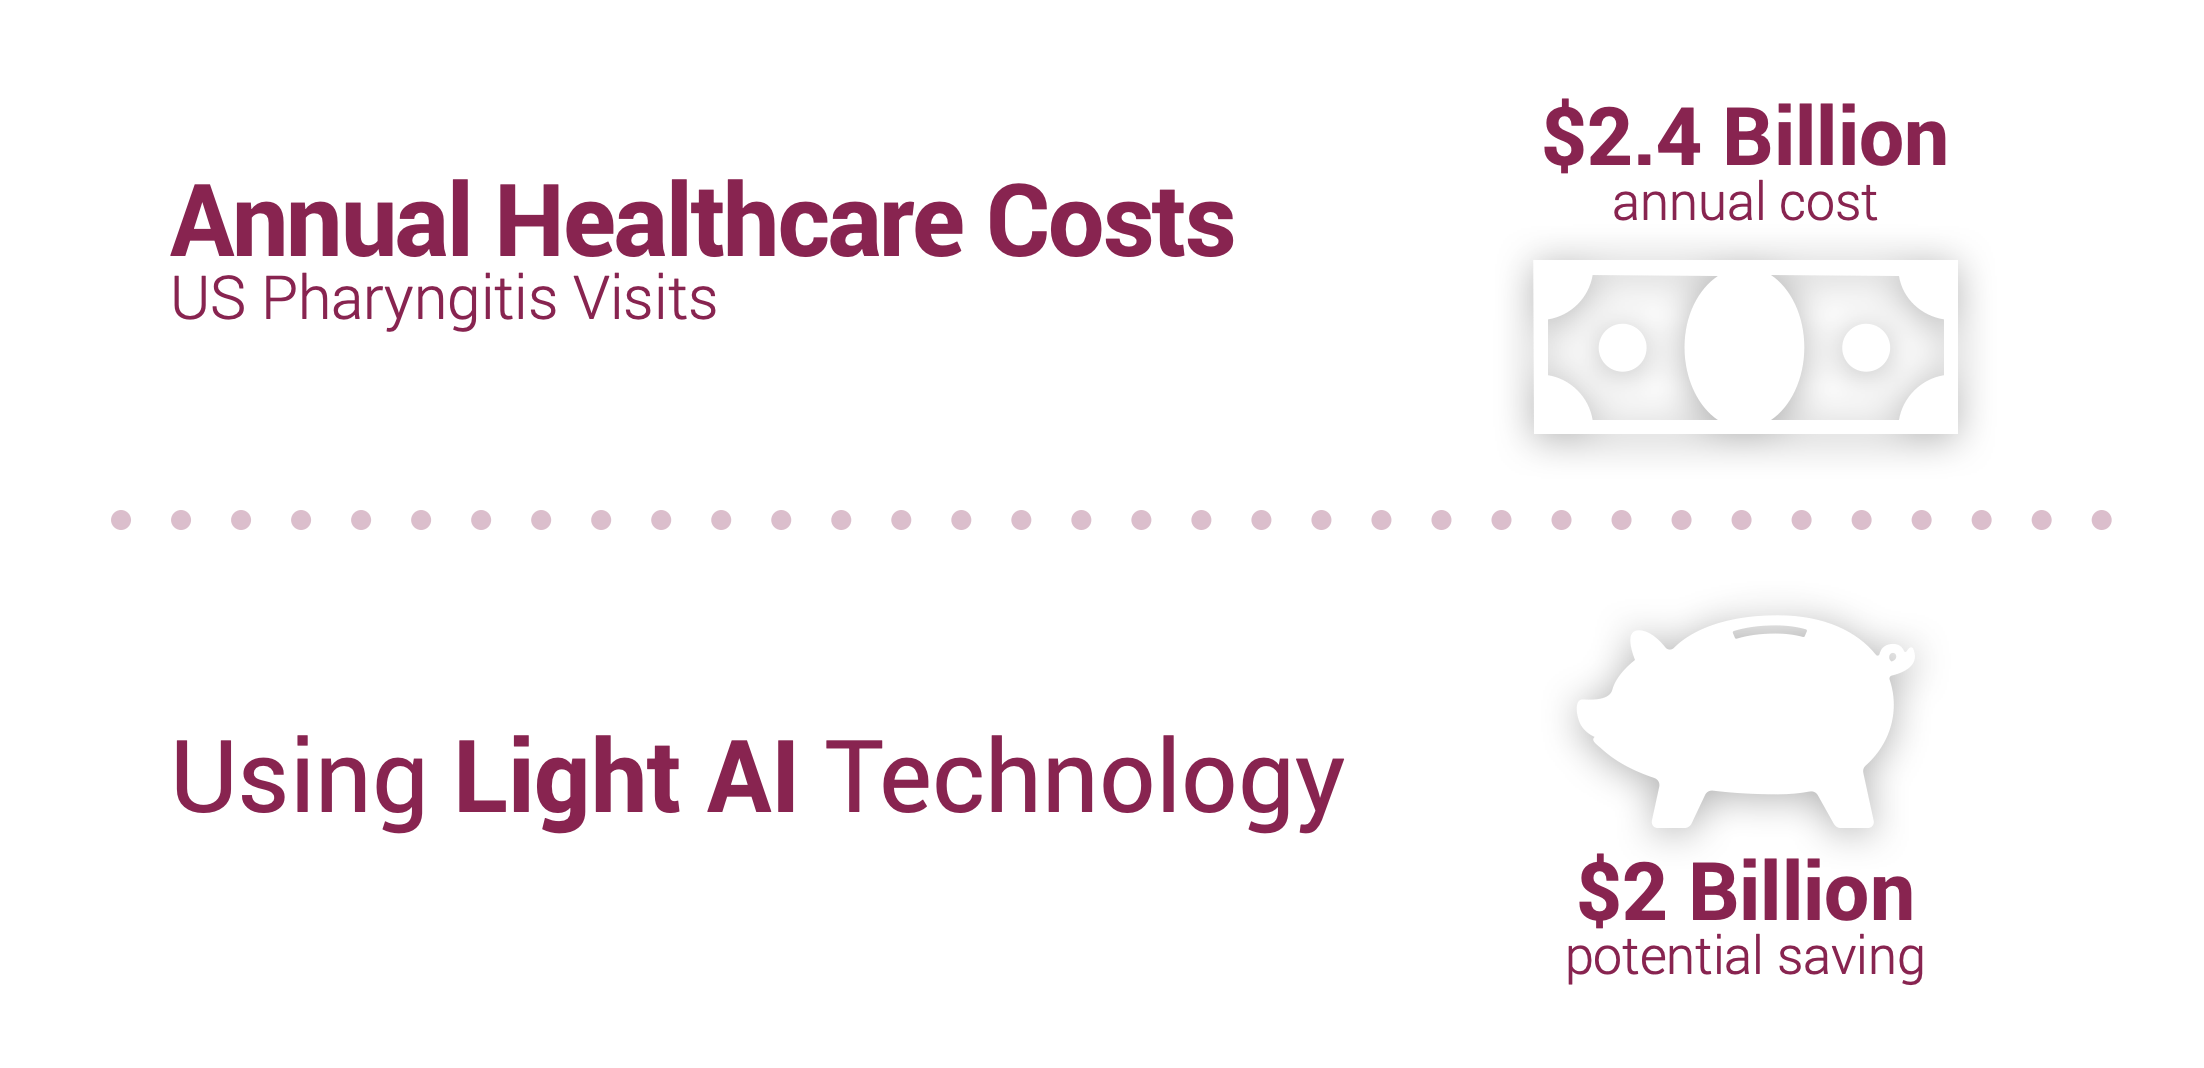 Light AI Technology Cost Savings